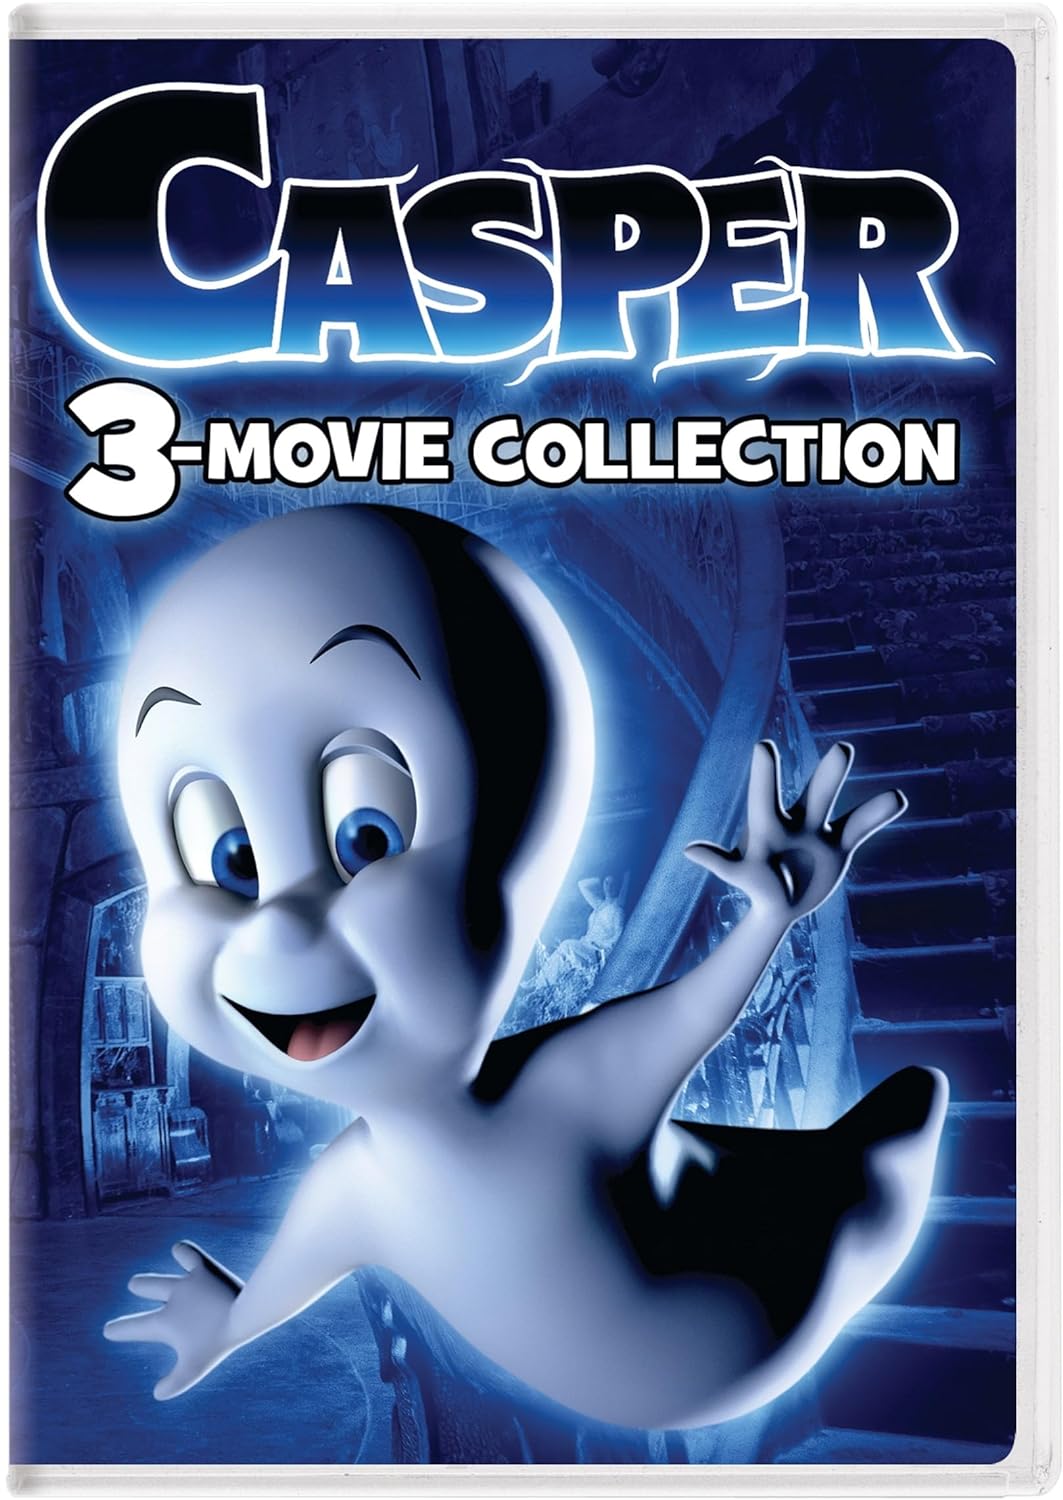 Casper 3-Movie Collection